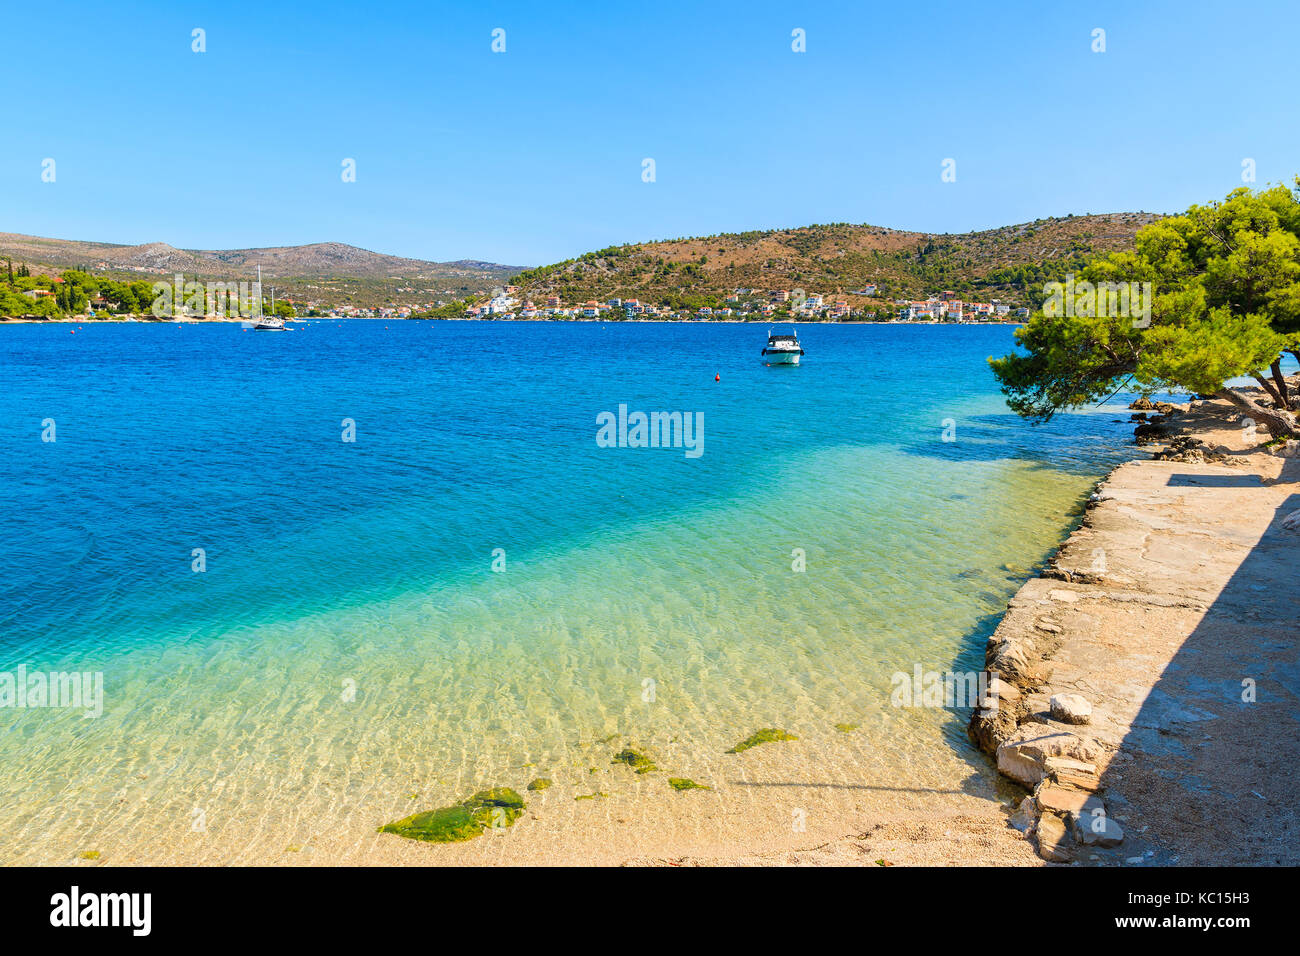 Blick auf den Strand mit türkisblauem kristallklaren Meer Wasser in Rogoznica Stadt, Dalmatien, Kroatien Stockfoto